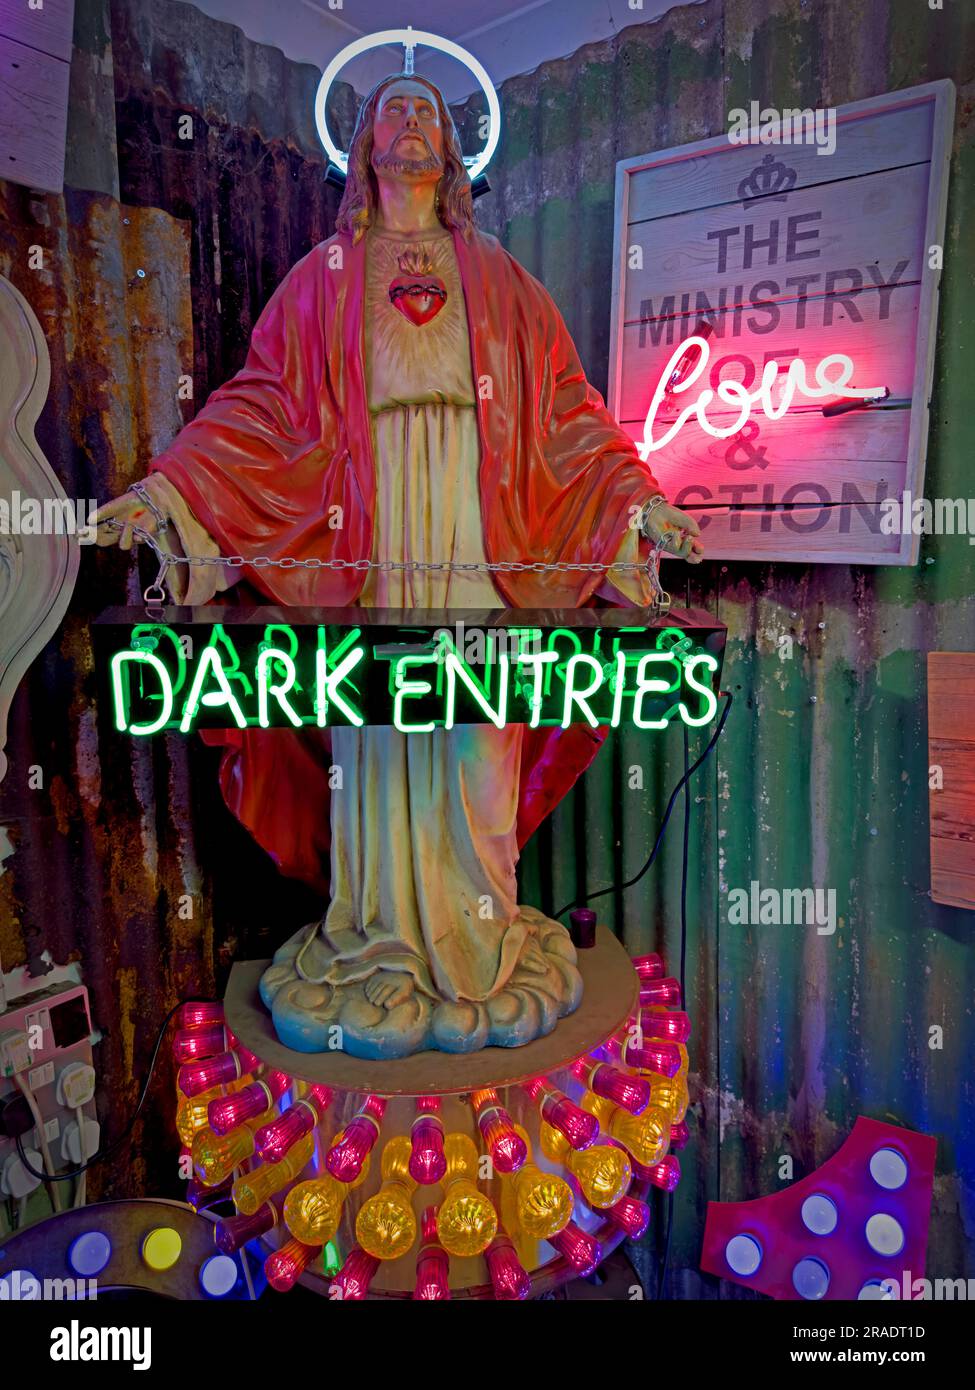 Jesus Statue Buddy Christ, mit Neonlicht-Design - das Ministerium für Liebe und Action, dunkle Einträge Stockfoto